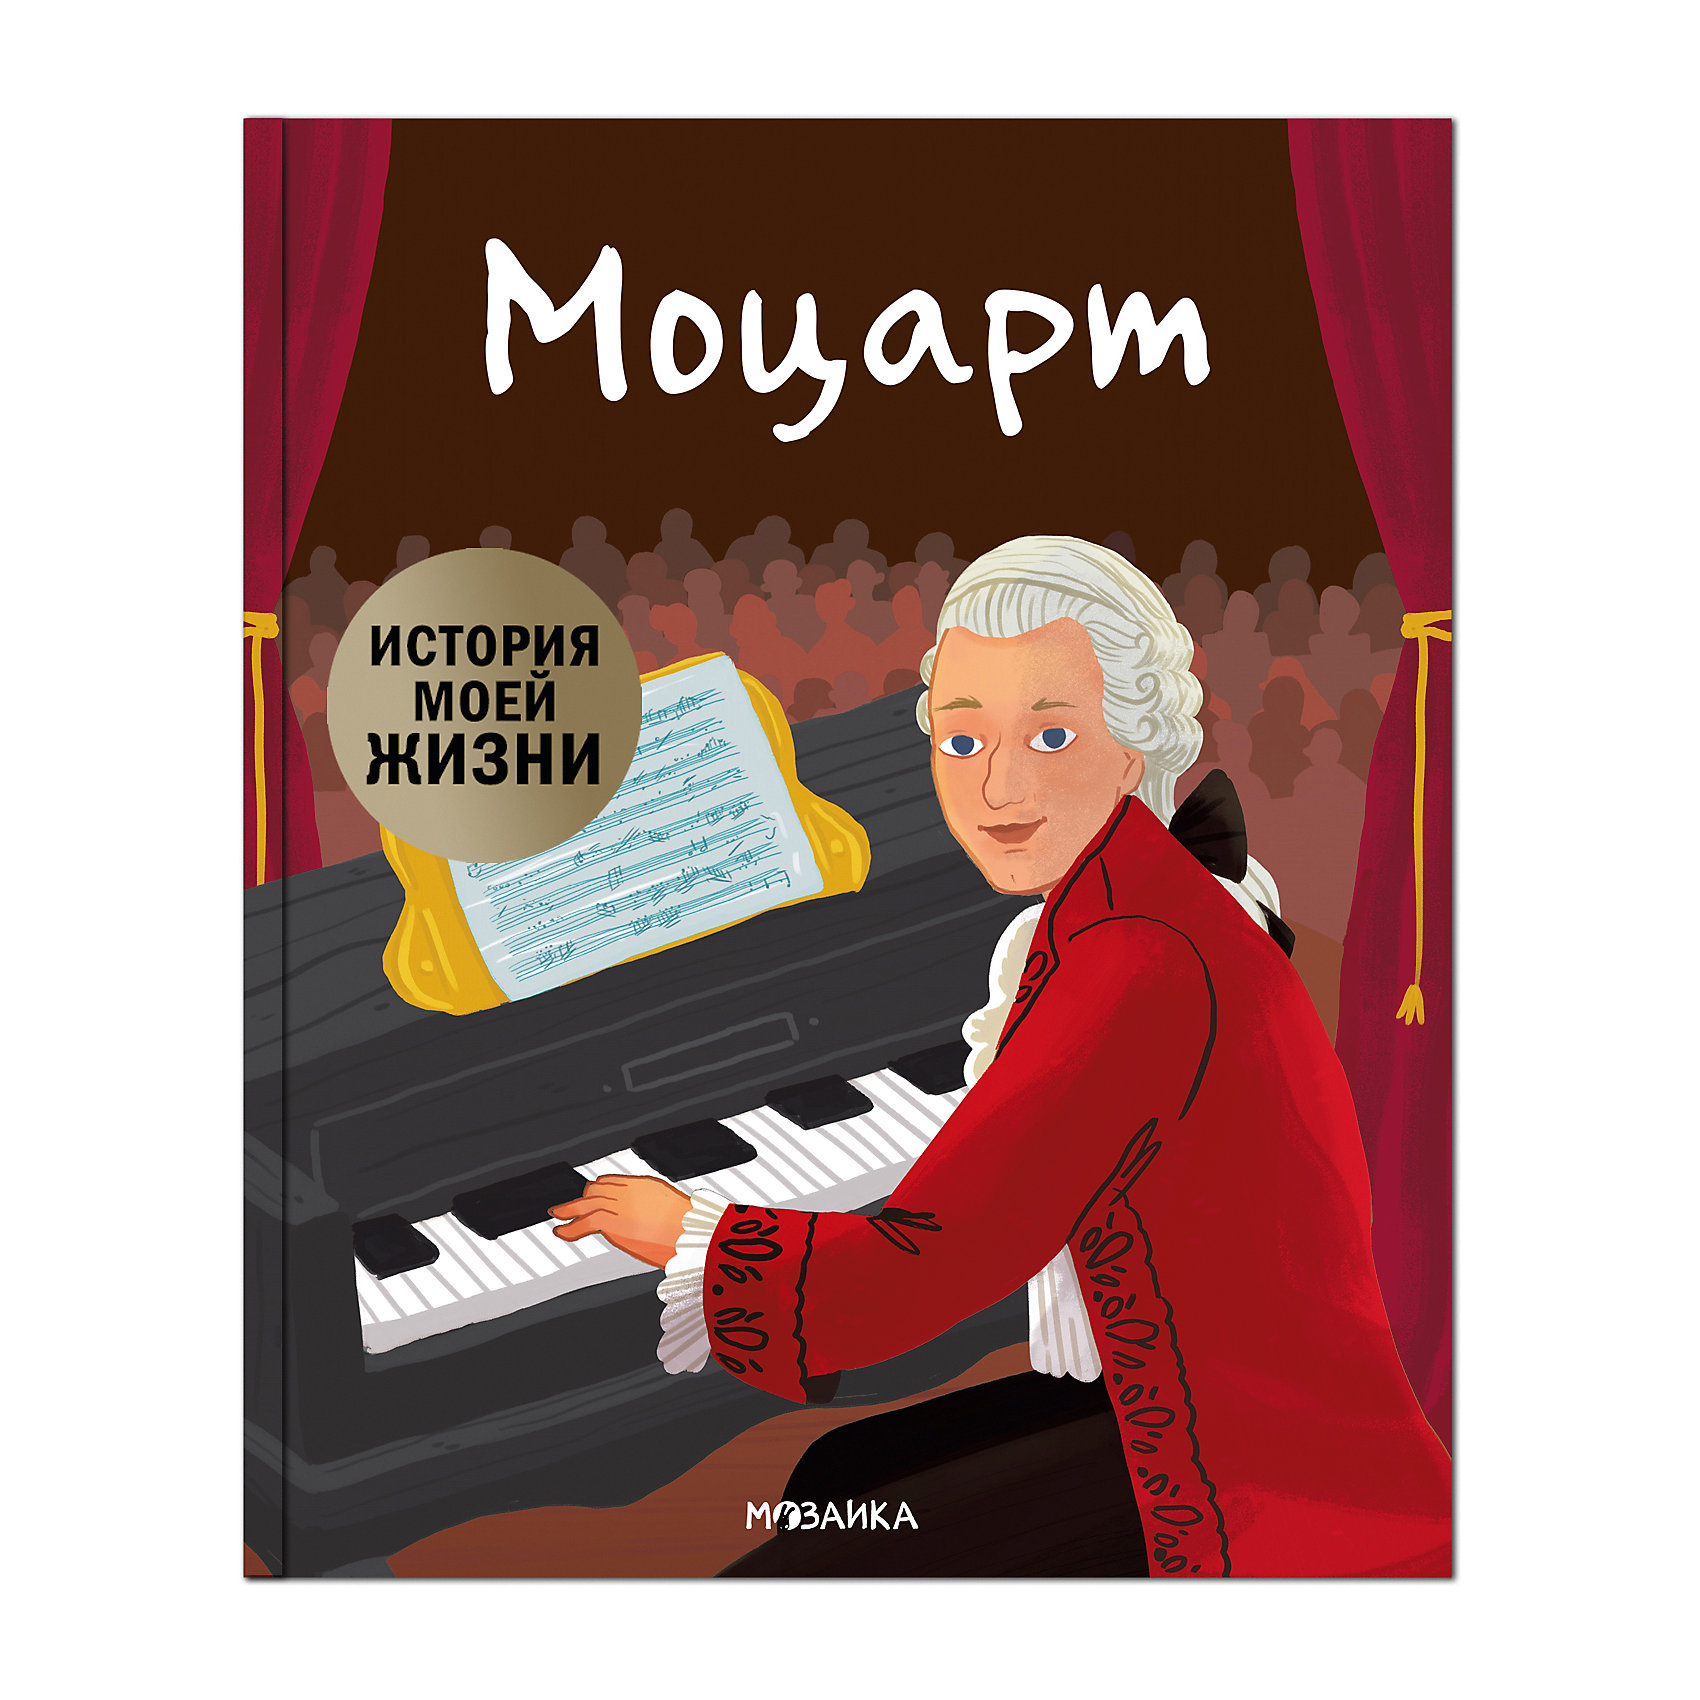 Моцарт детям для мозга. Моцарт. Жизнь Моцарта. Подарочные книги композиторы. М-С.история моей жизни. Моцарт.